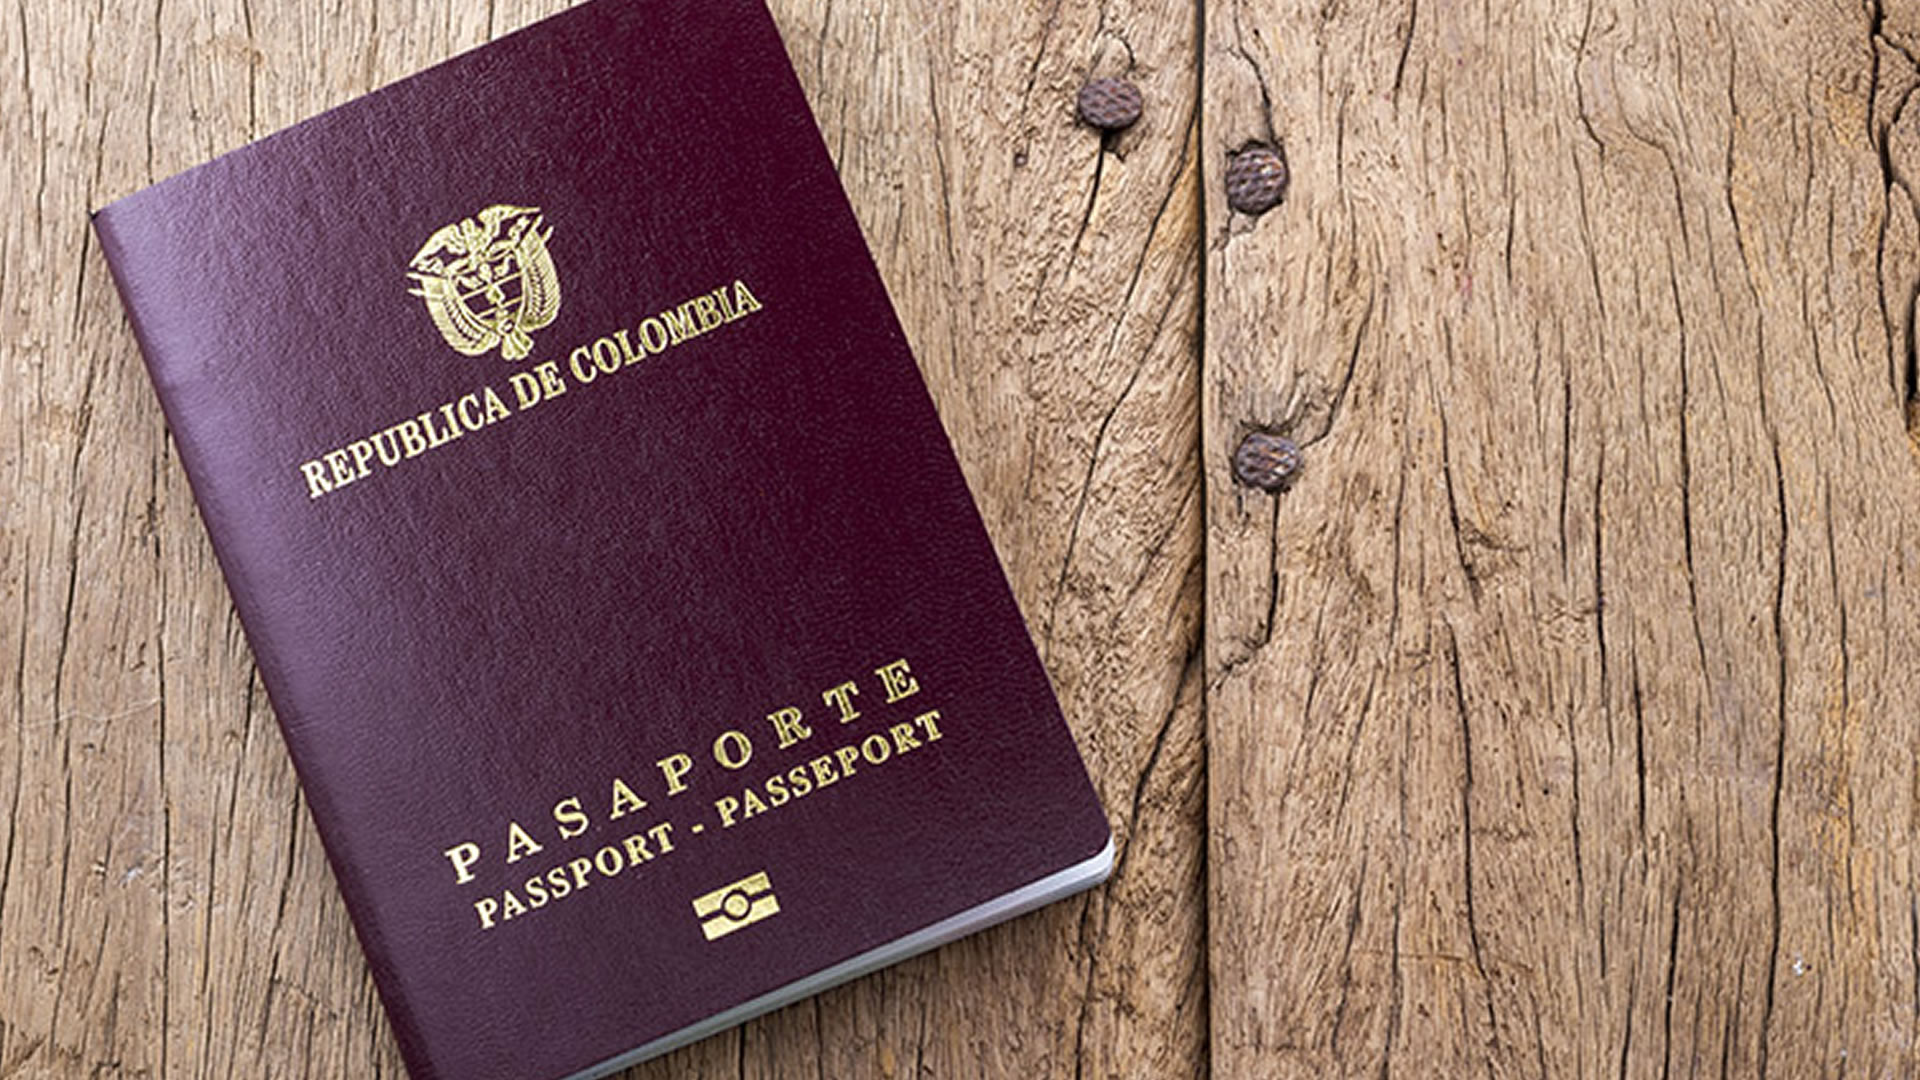 Pasaporte de Colombia. Foto: Shutter Stock.